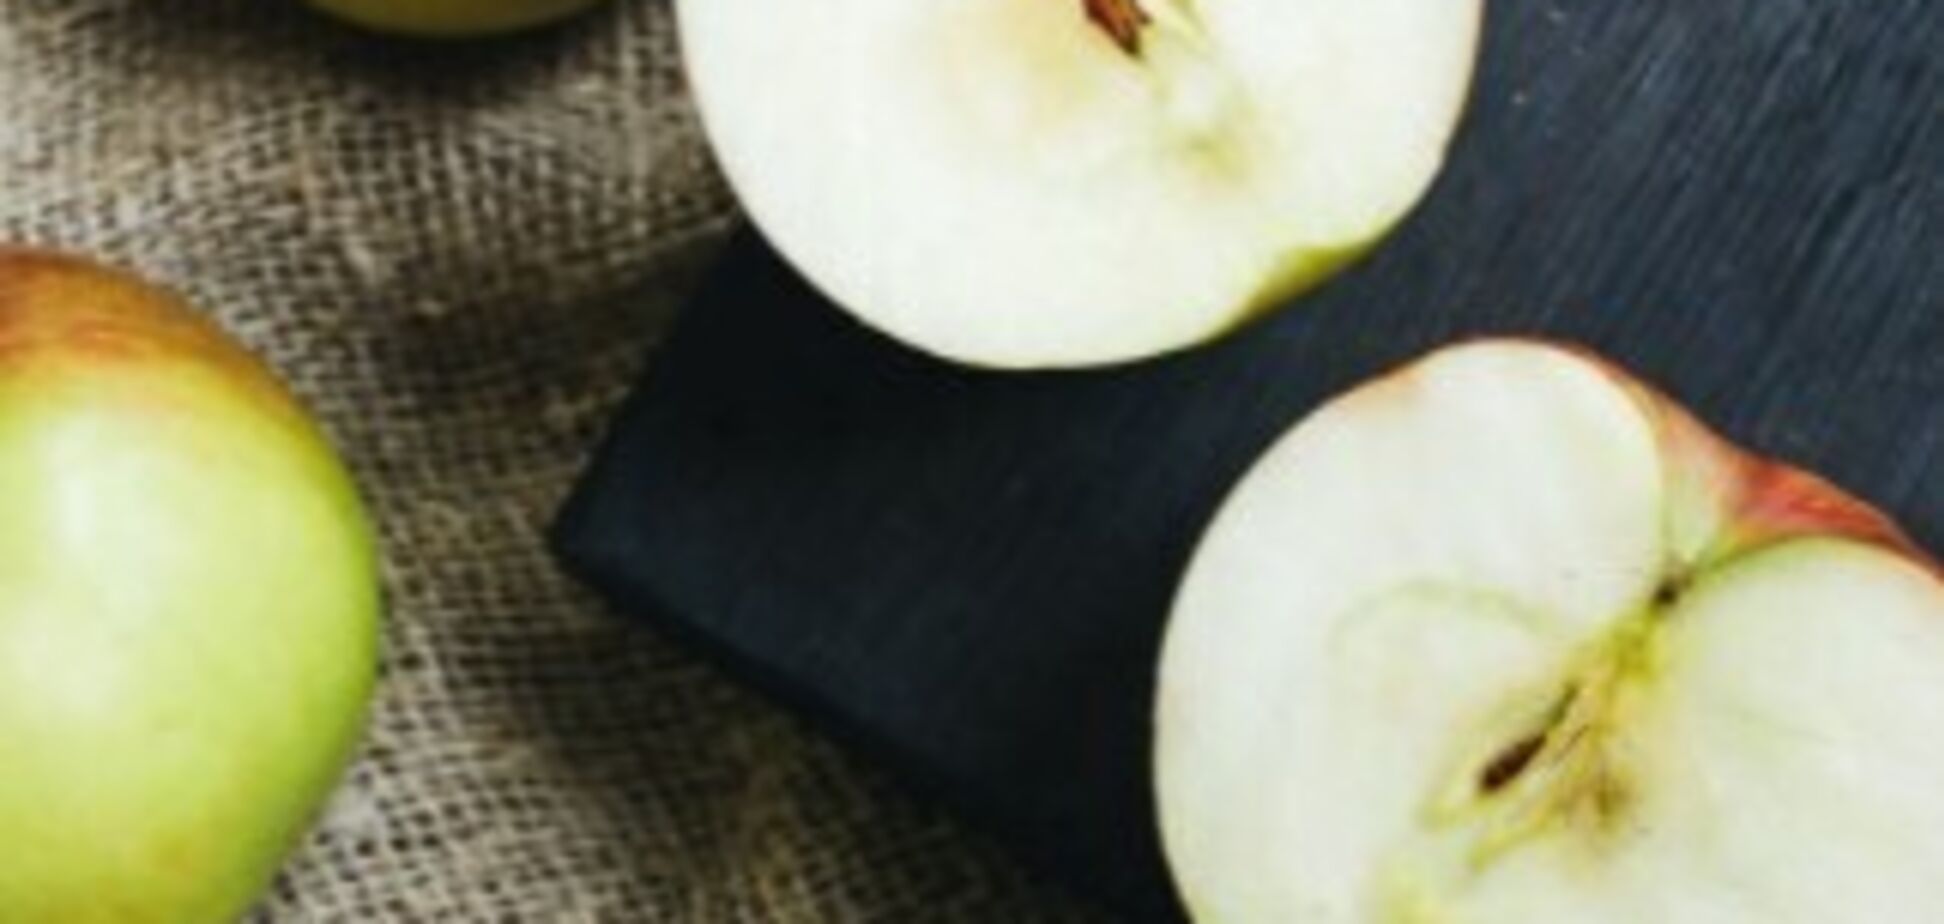 Как уберечь яблоки от потемнения: элементарный лайфхак